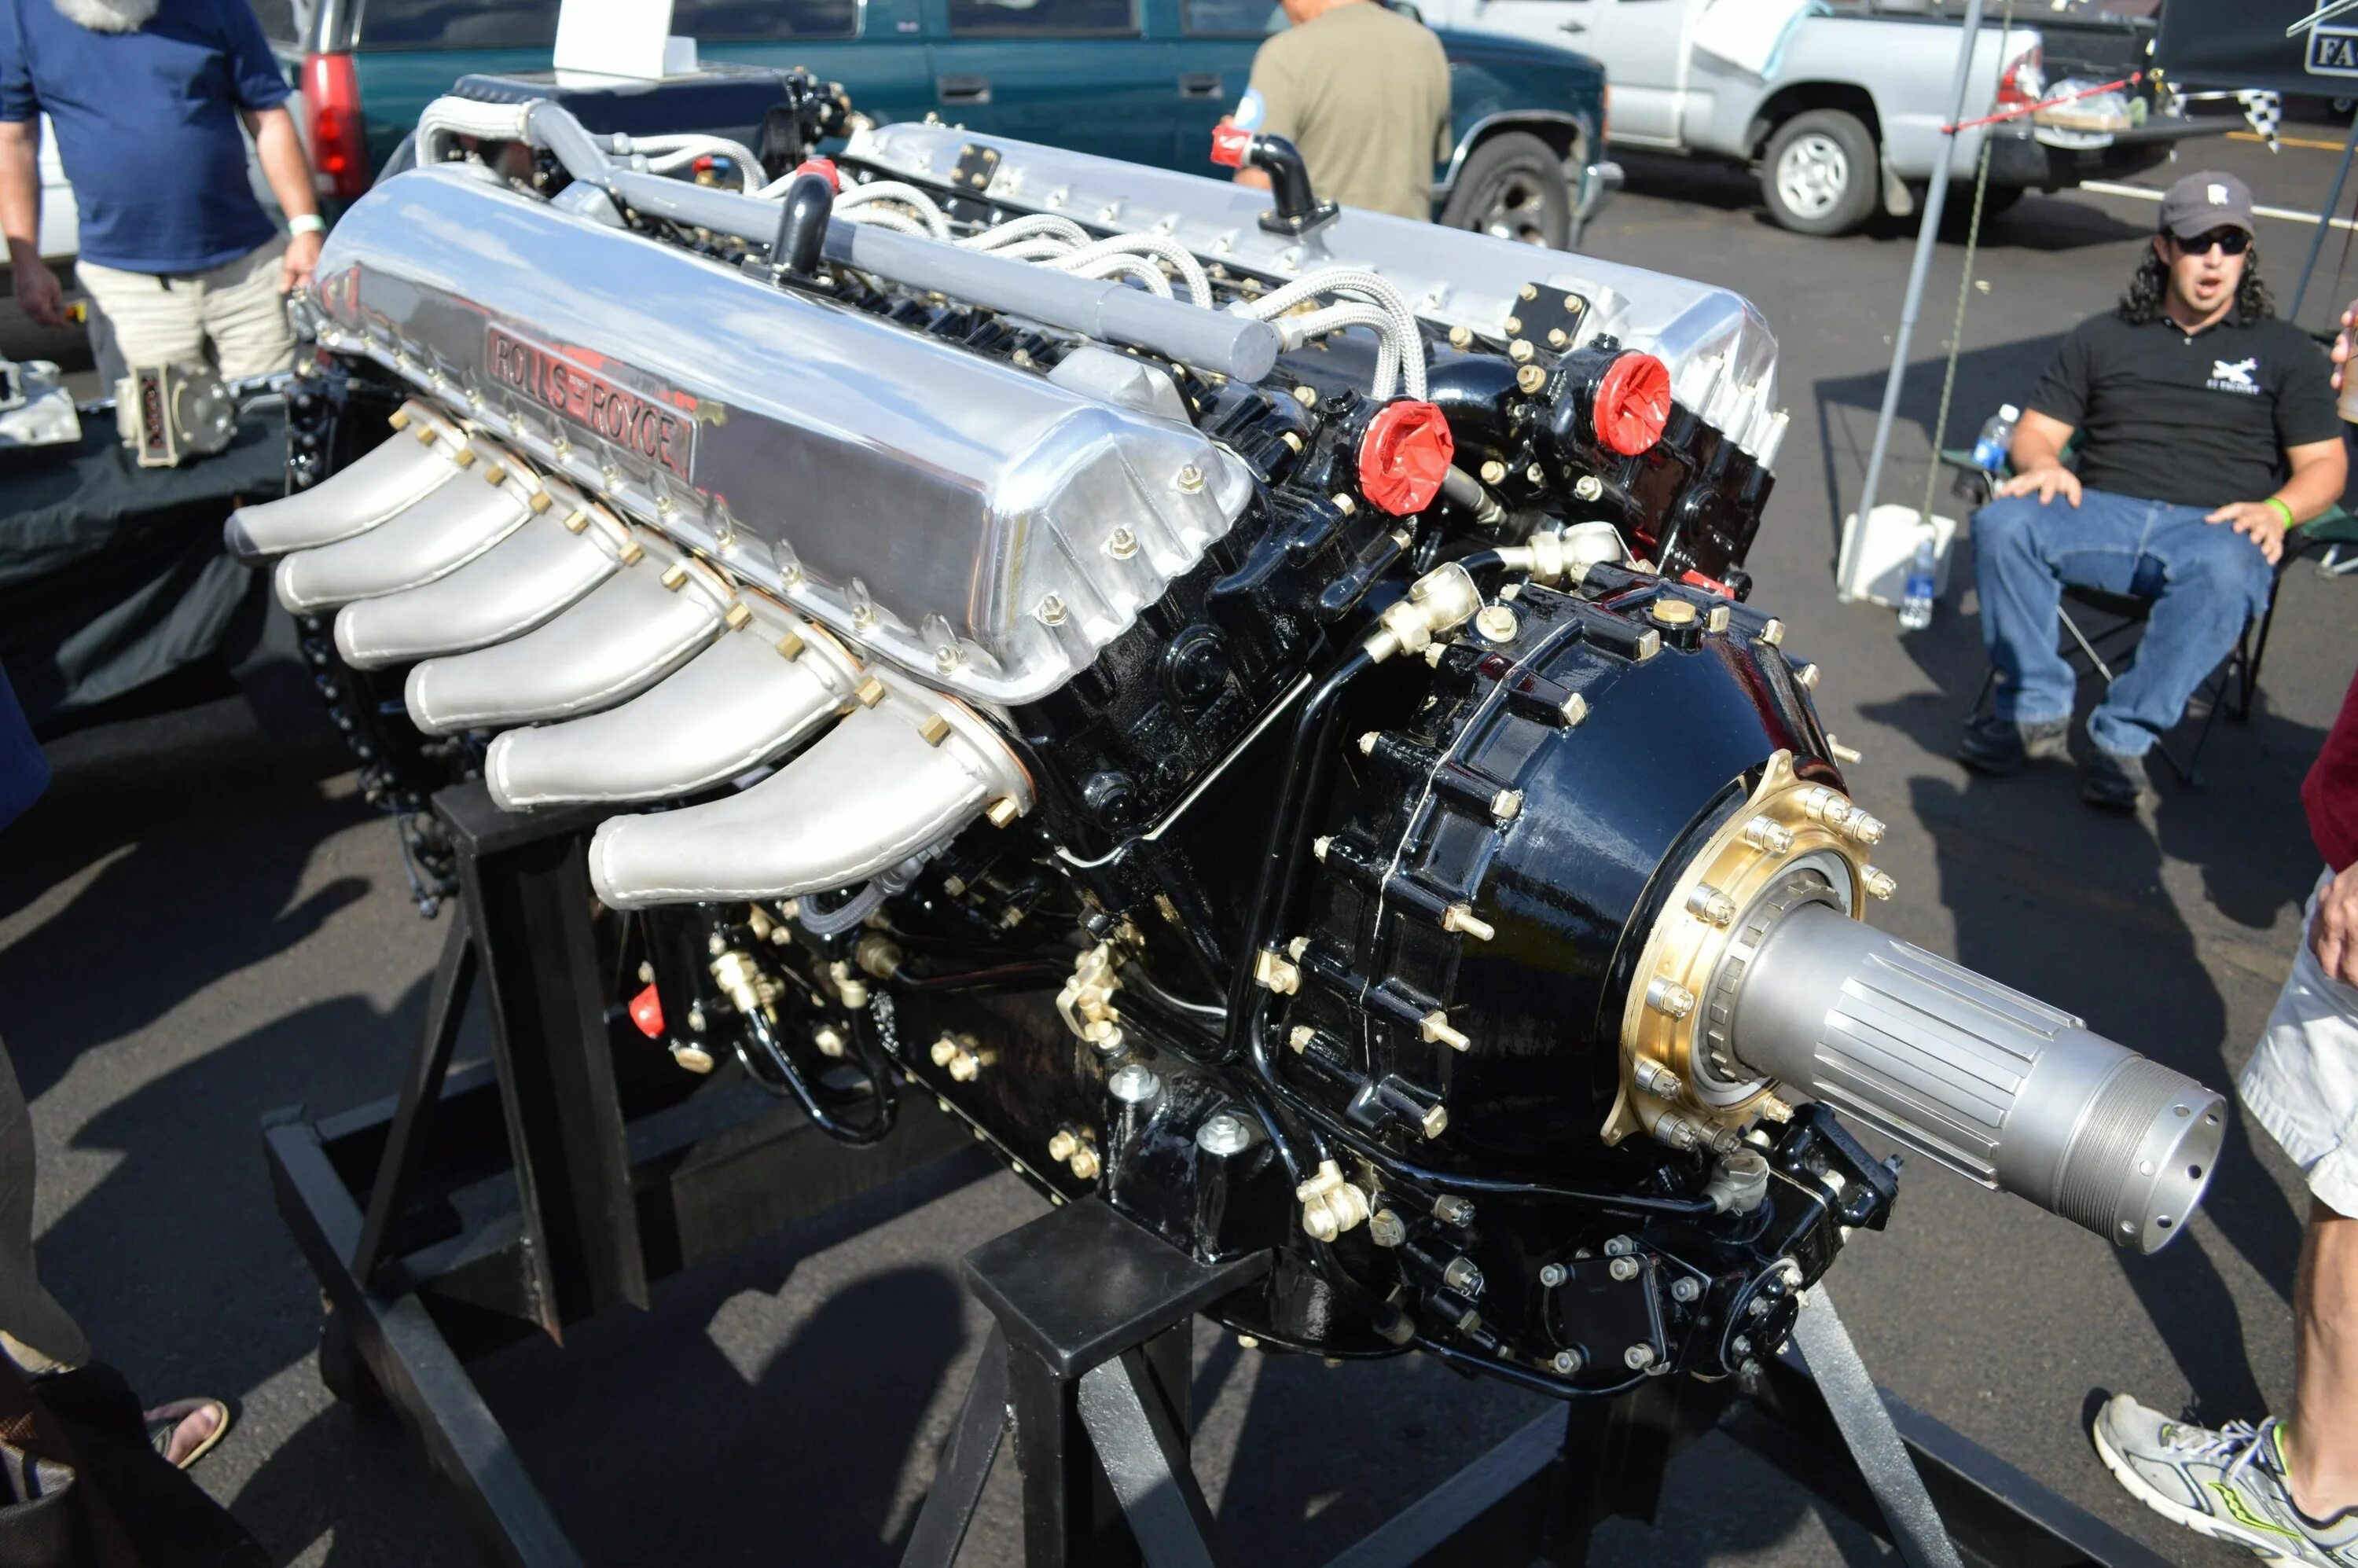 12 двиг. Двигатель Rolls-Royce v12. V12 Rolls-Royce Merlin. Rolls Royce Merlin v12 Spitfire. Двигатель Роллс Ройс v12.